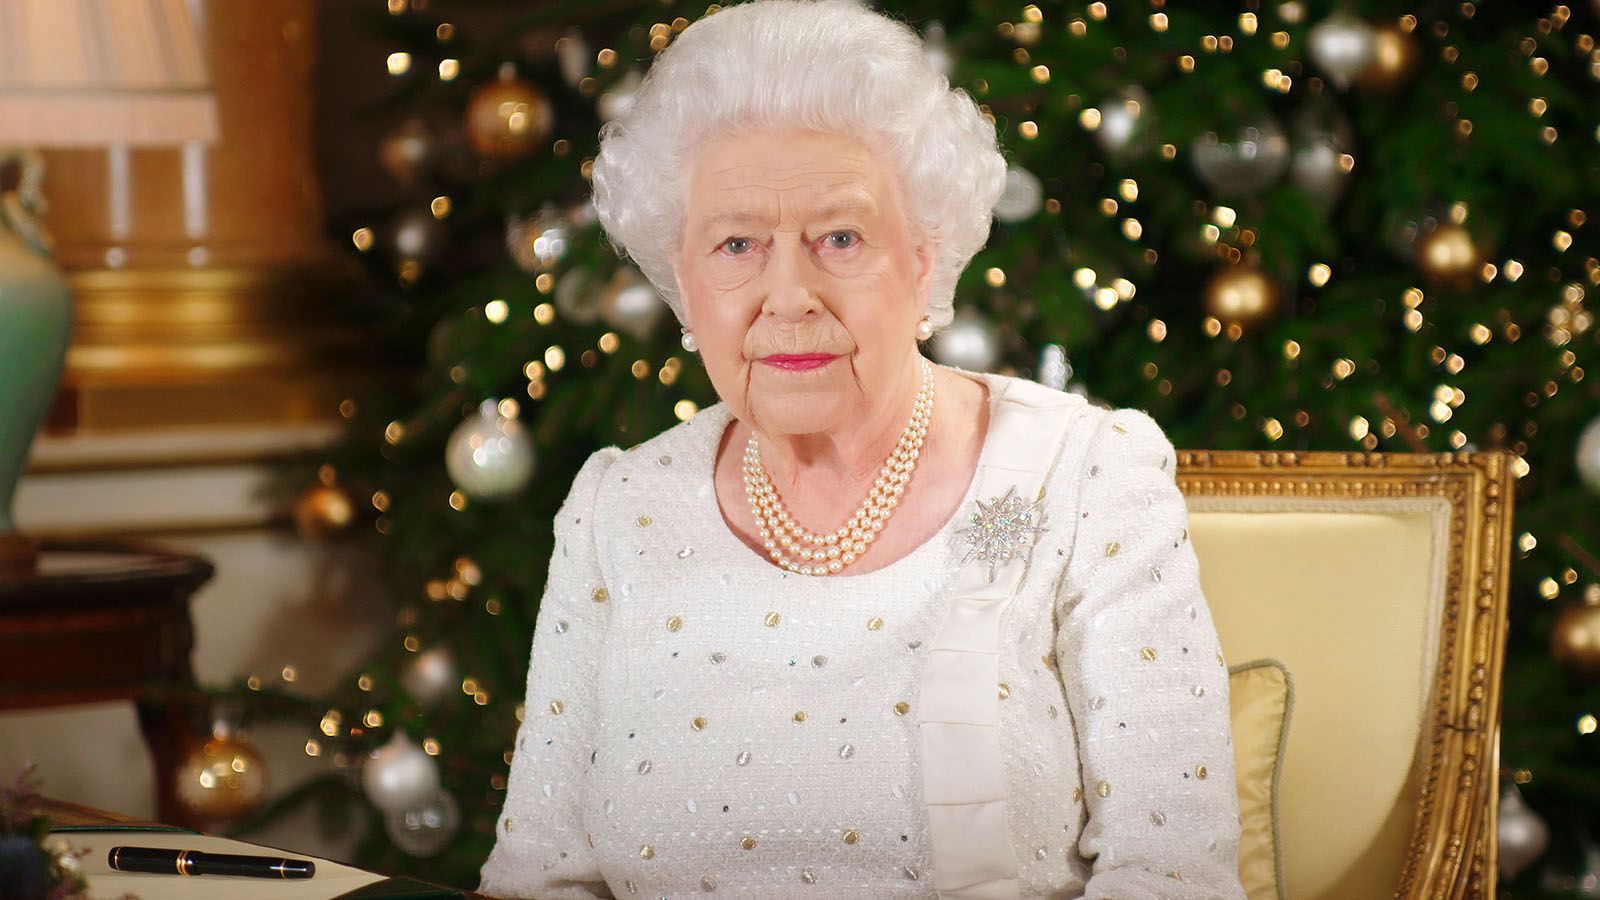 La reina Isabel II se blinda en palacio y cancela sus tradiciones navideñas